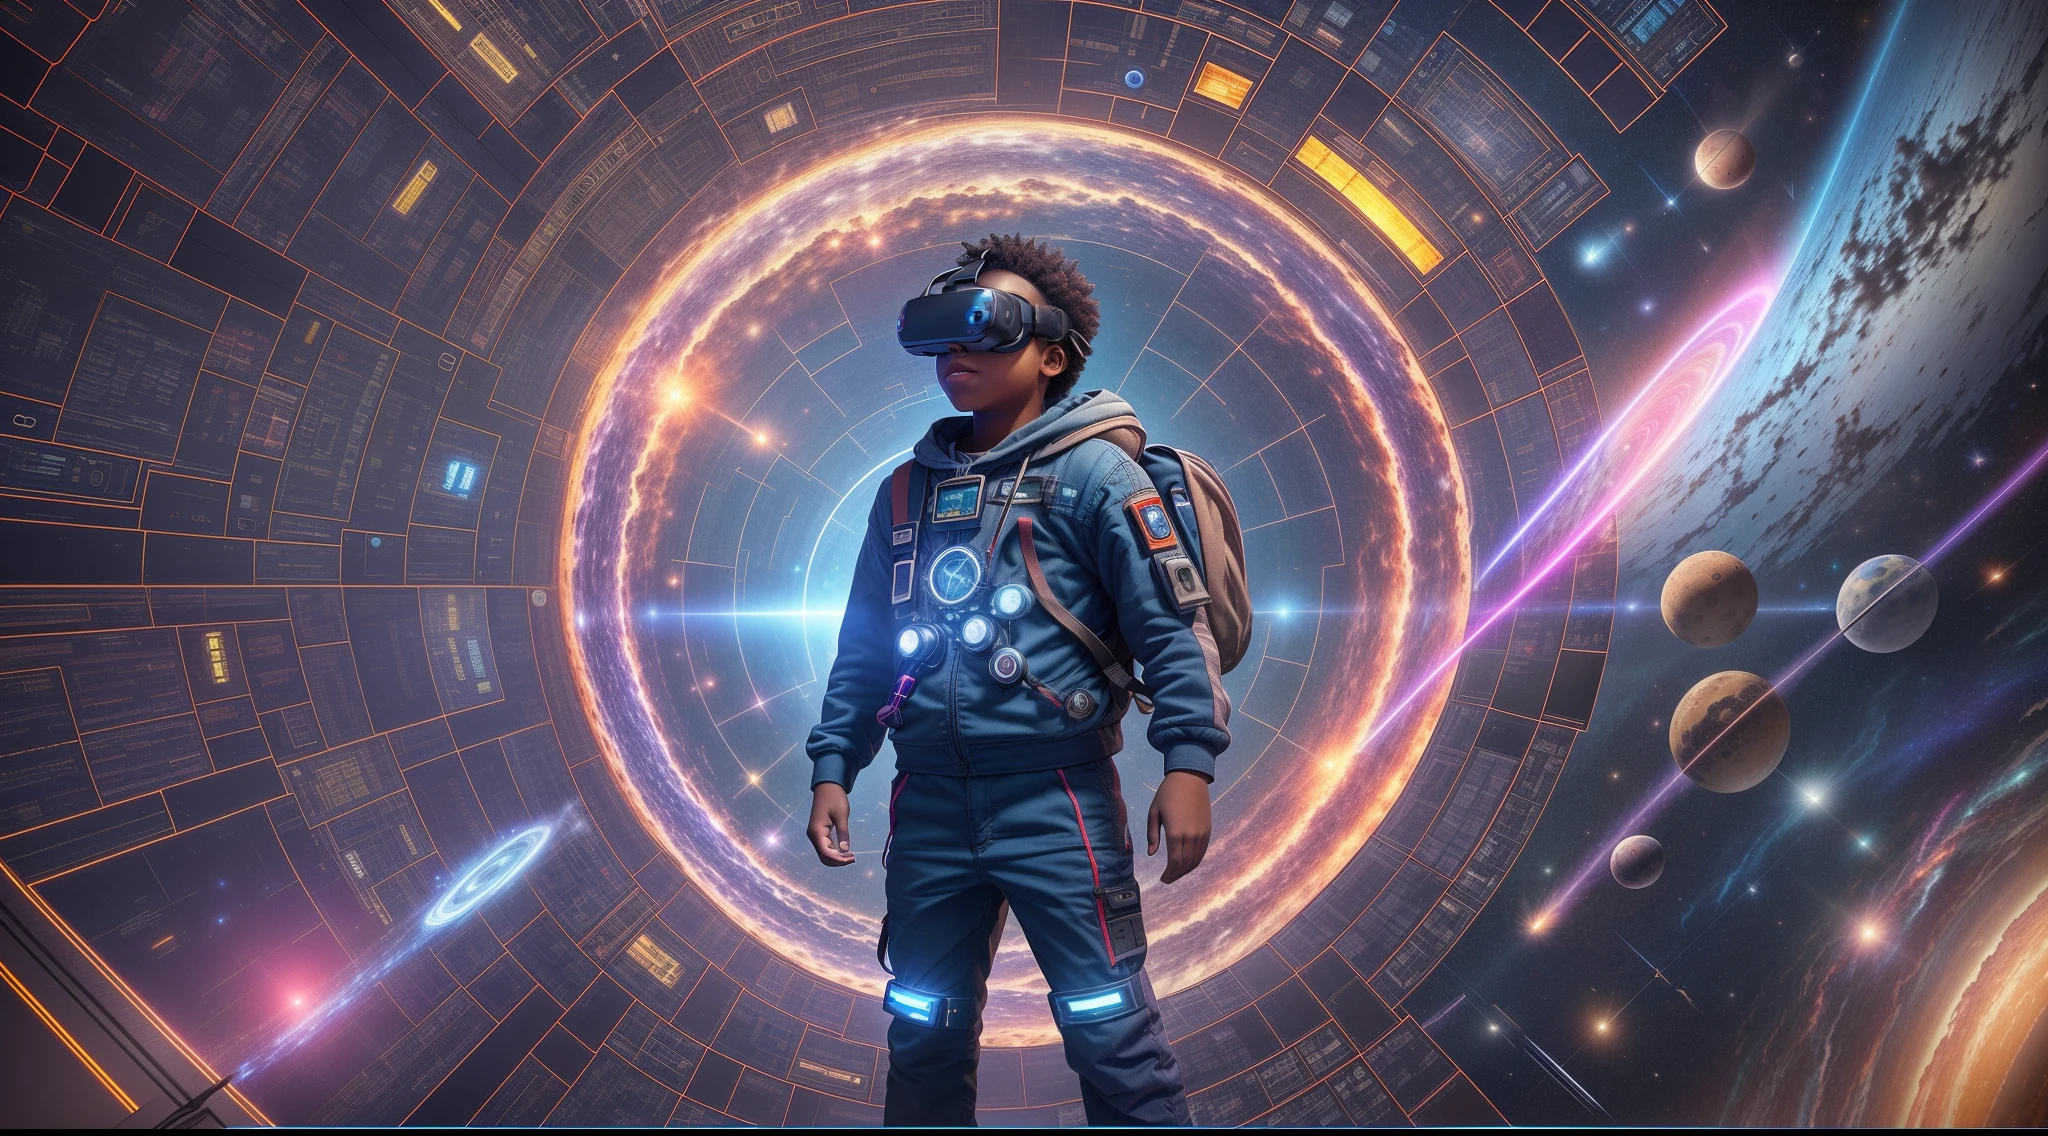 Ein 12-jähriger Nigerianer, molliger Junge mit kurzen schwarzen Haaren, mit futuristischer VR-Brille, an kompliziert futuristic backpack with blinkende Lichter, mit einem Fuß nach vorne auf einem leuchtenden Portalpad stehen, Arme ausgebreitet, Körper nach vorne geneigt, bereit, in ein wirbelndes Portal aus Blau zu springen, violettes und rosa Licht und Wolken vor ihm. Detailed kompliziert sci-fi machinery, blinkende Lichter, glühende Energiequellen, und fortschrittliche Technologie umgibt ihn. Dramatische Beleuchtung erzeugt einen starken Kontrast zu seinem aufgeregten Gesichtsausdruck, während er durch Raum und Zeit reist. Porträtfoto, ausführlich, kompliziert, fotorealistisch, unwirkliche Engine, Octane render, volumetrische Beleuchtung, filmische Beleuchtung, 35mm lens, große Tiefenschärfe. --auto --s2